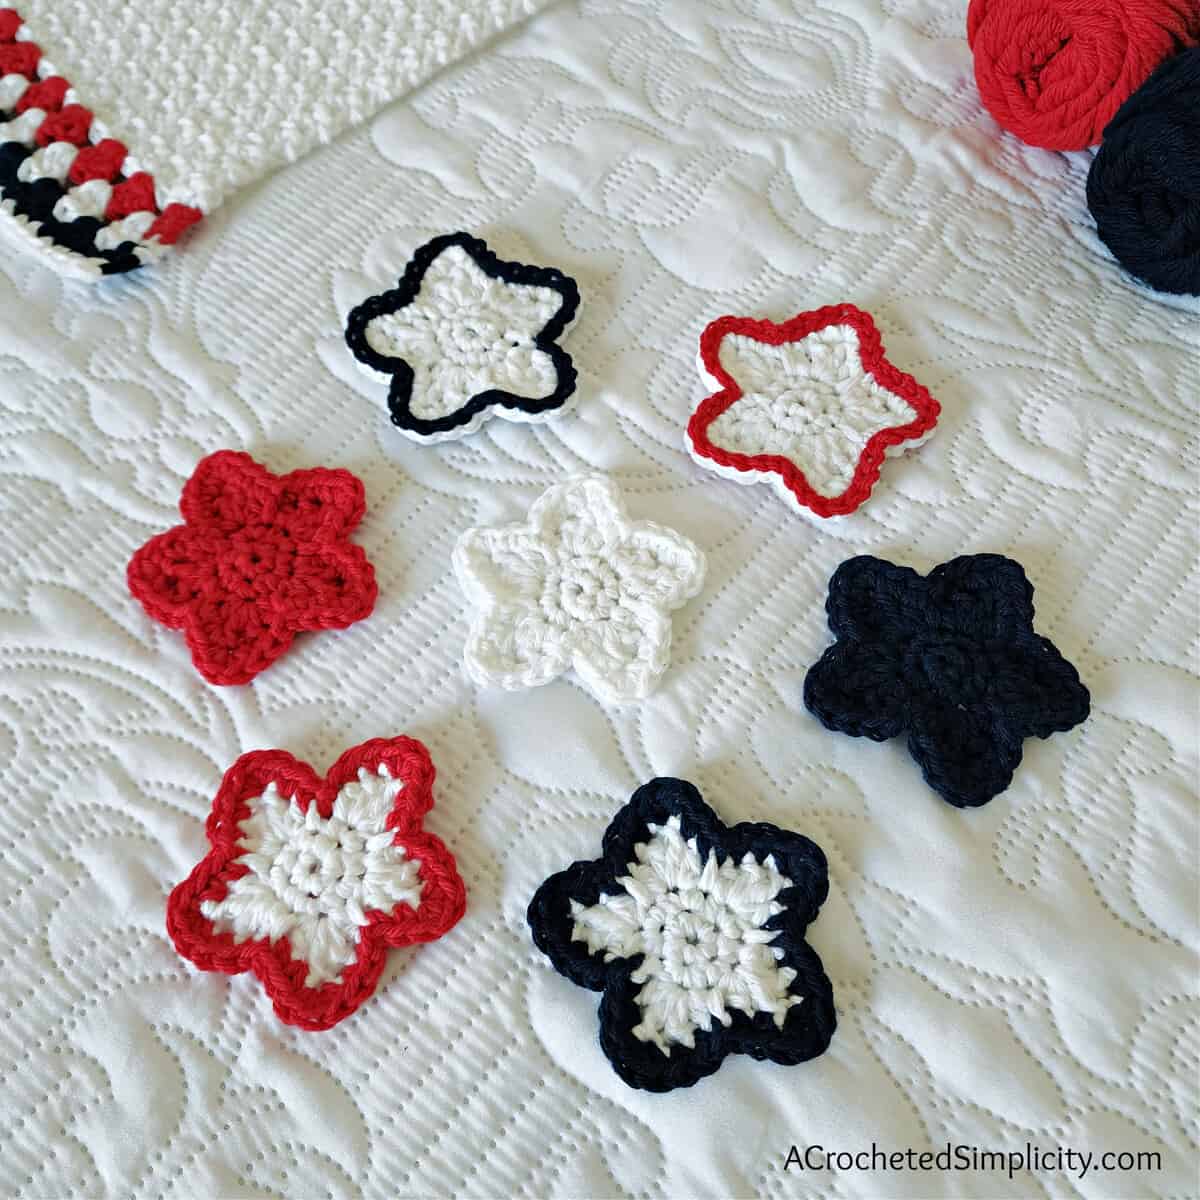 Crochet Rose Pattern - Free Crochet Pattern - A Crocheted Simplicity